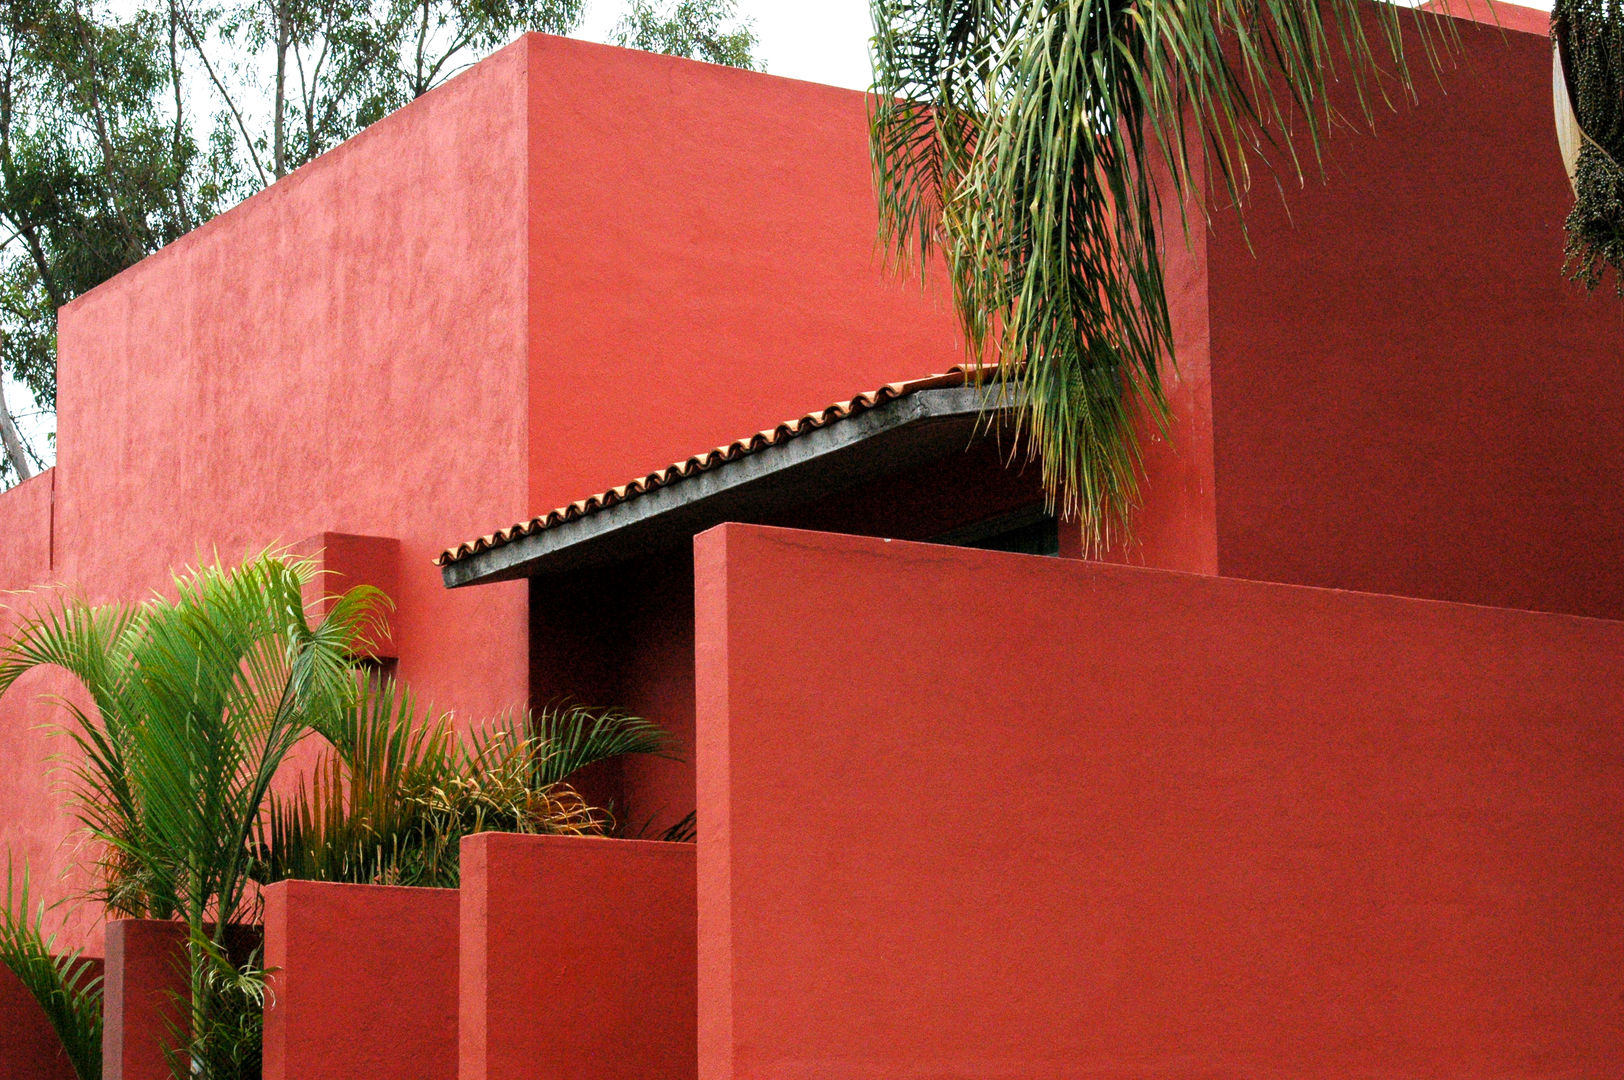 Can SeO Taller A3 SC Casas modernas fachada roja,residencias,casa habitacion